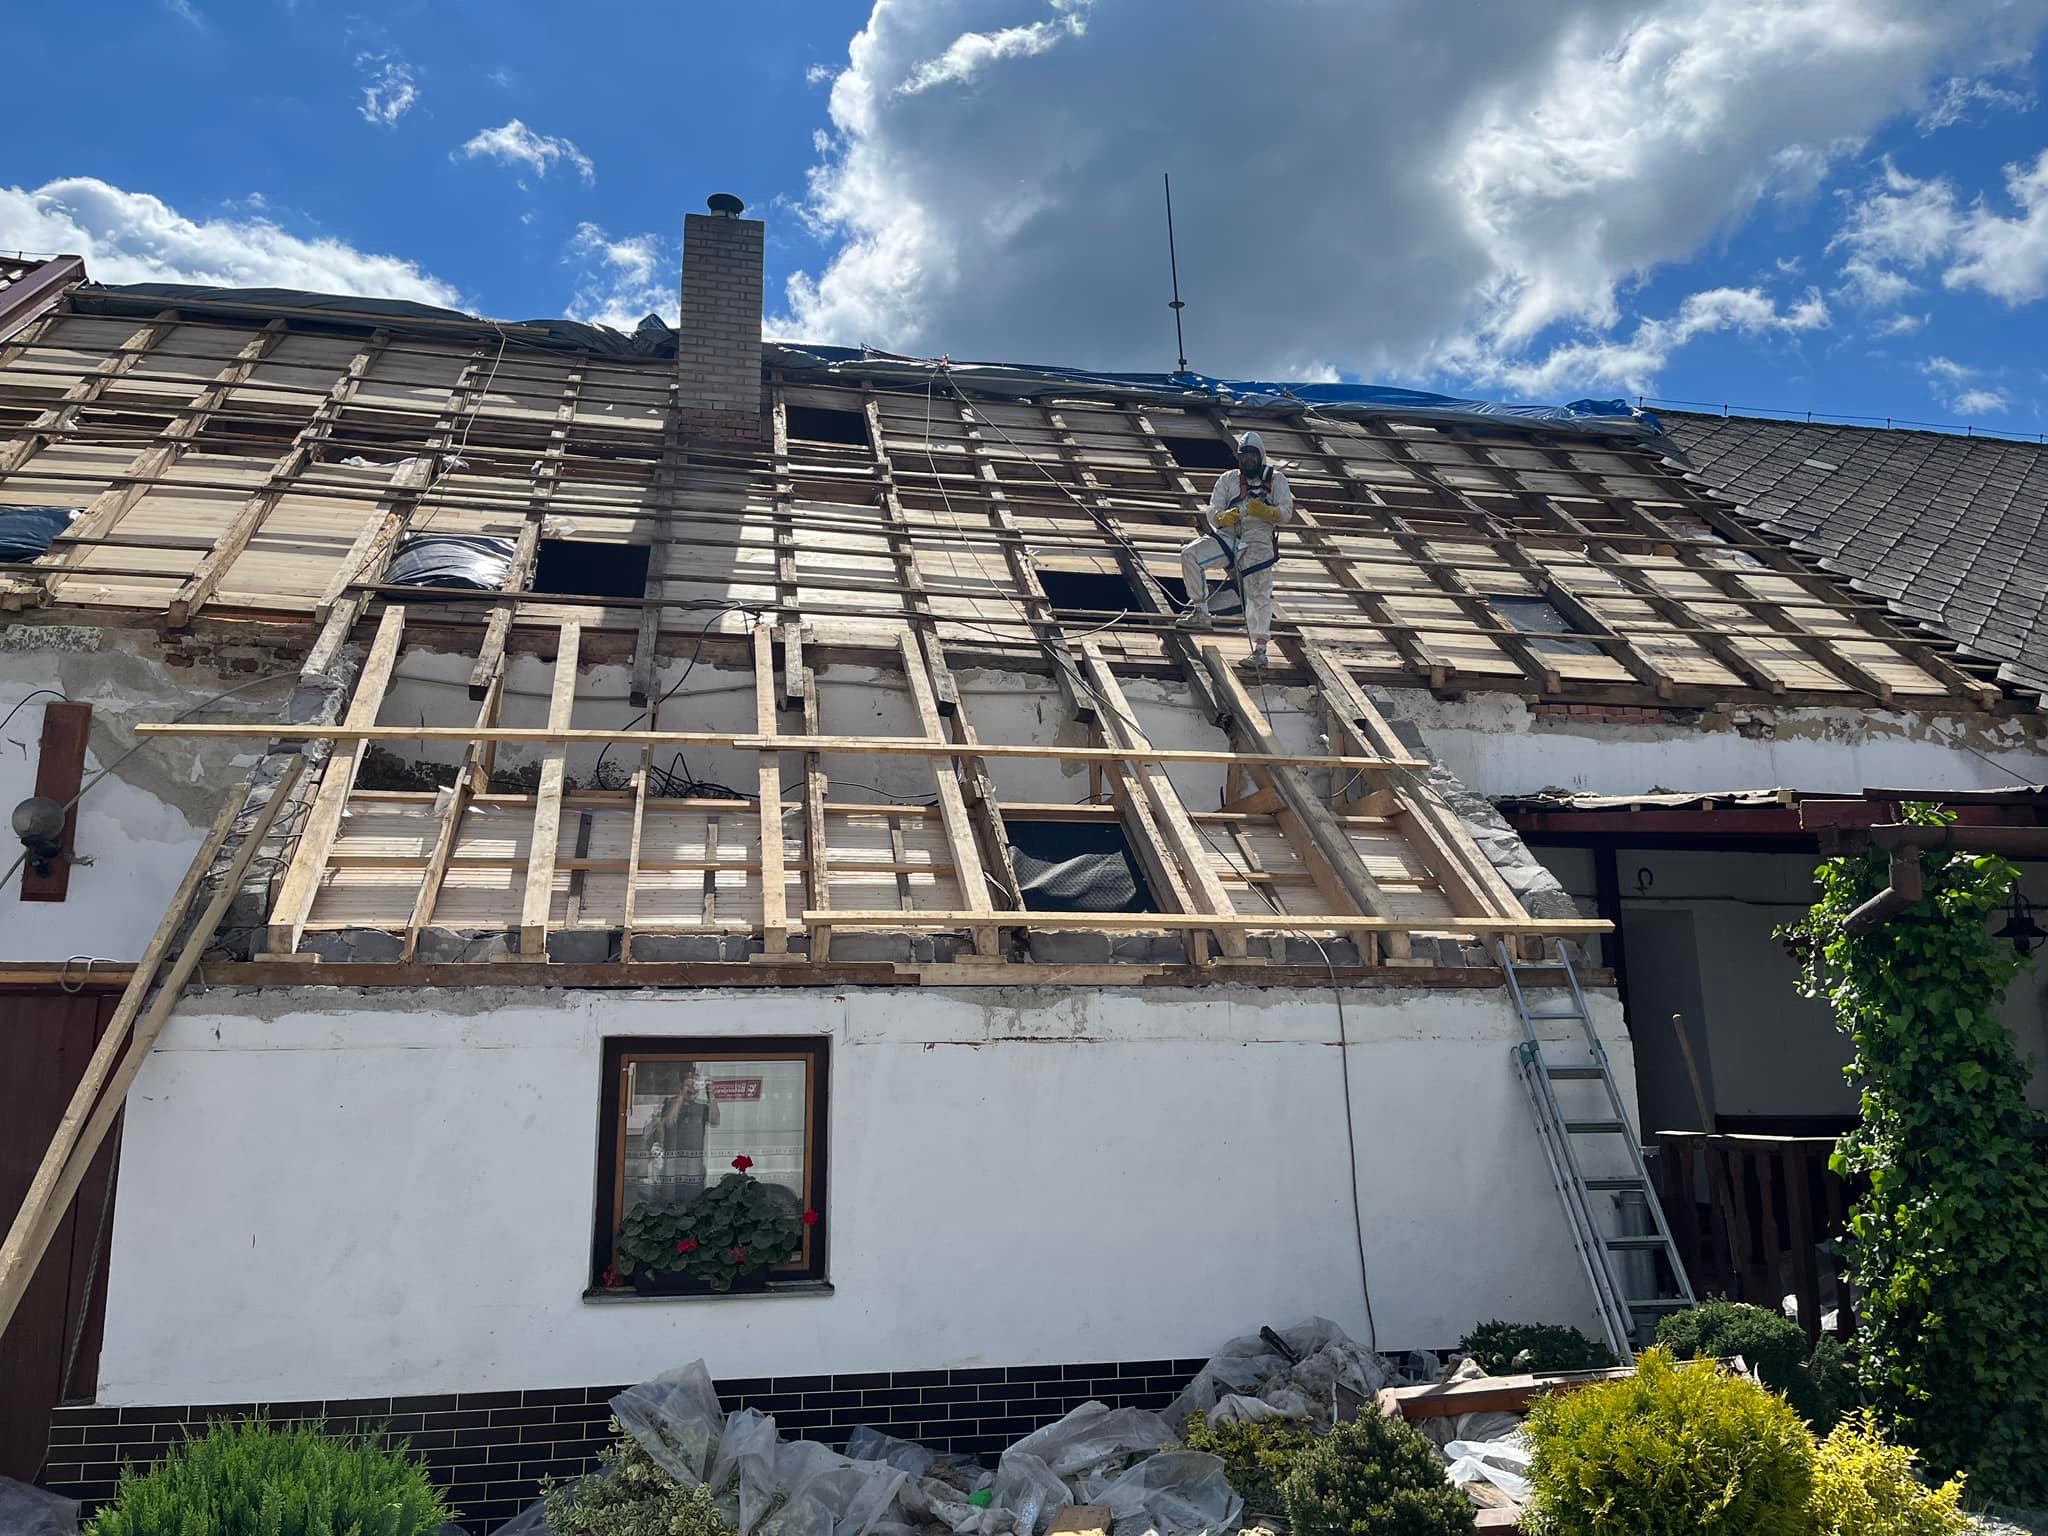 Pracovník v ochranném oblečení opravuje krov rodinného domu, kde jsou části střechy odhalené a viditelné dřevěné trámy.